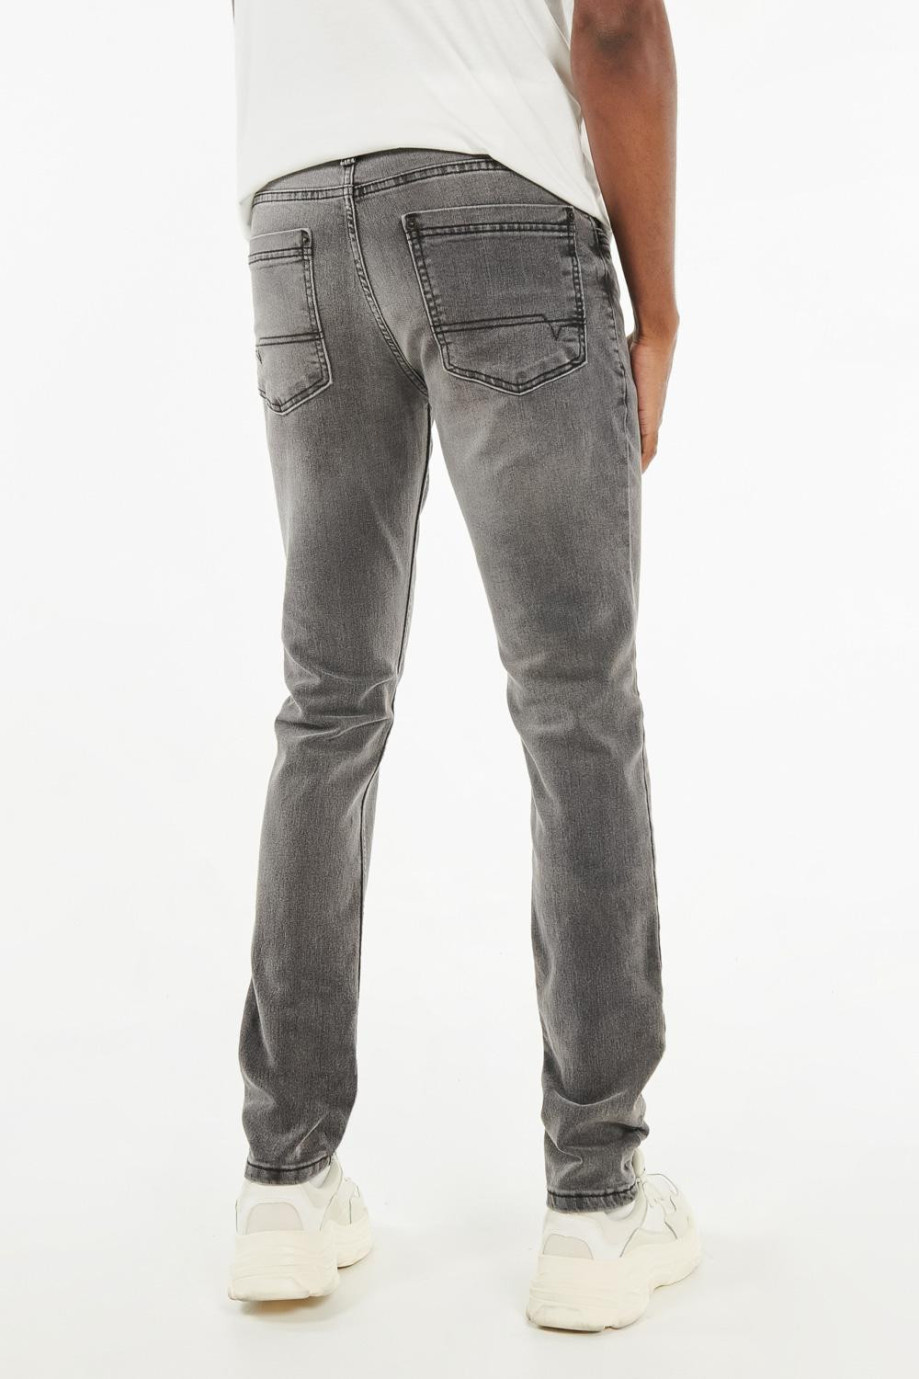 Jean gris oscuro tipo skinny con tiro alto y costuras en contraste